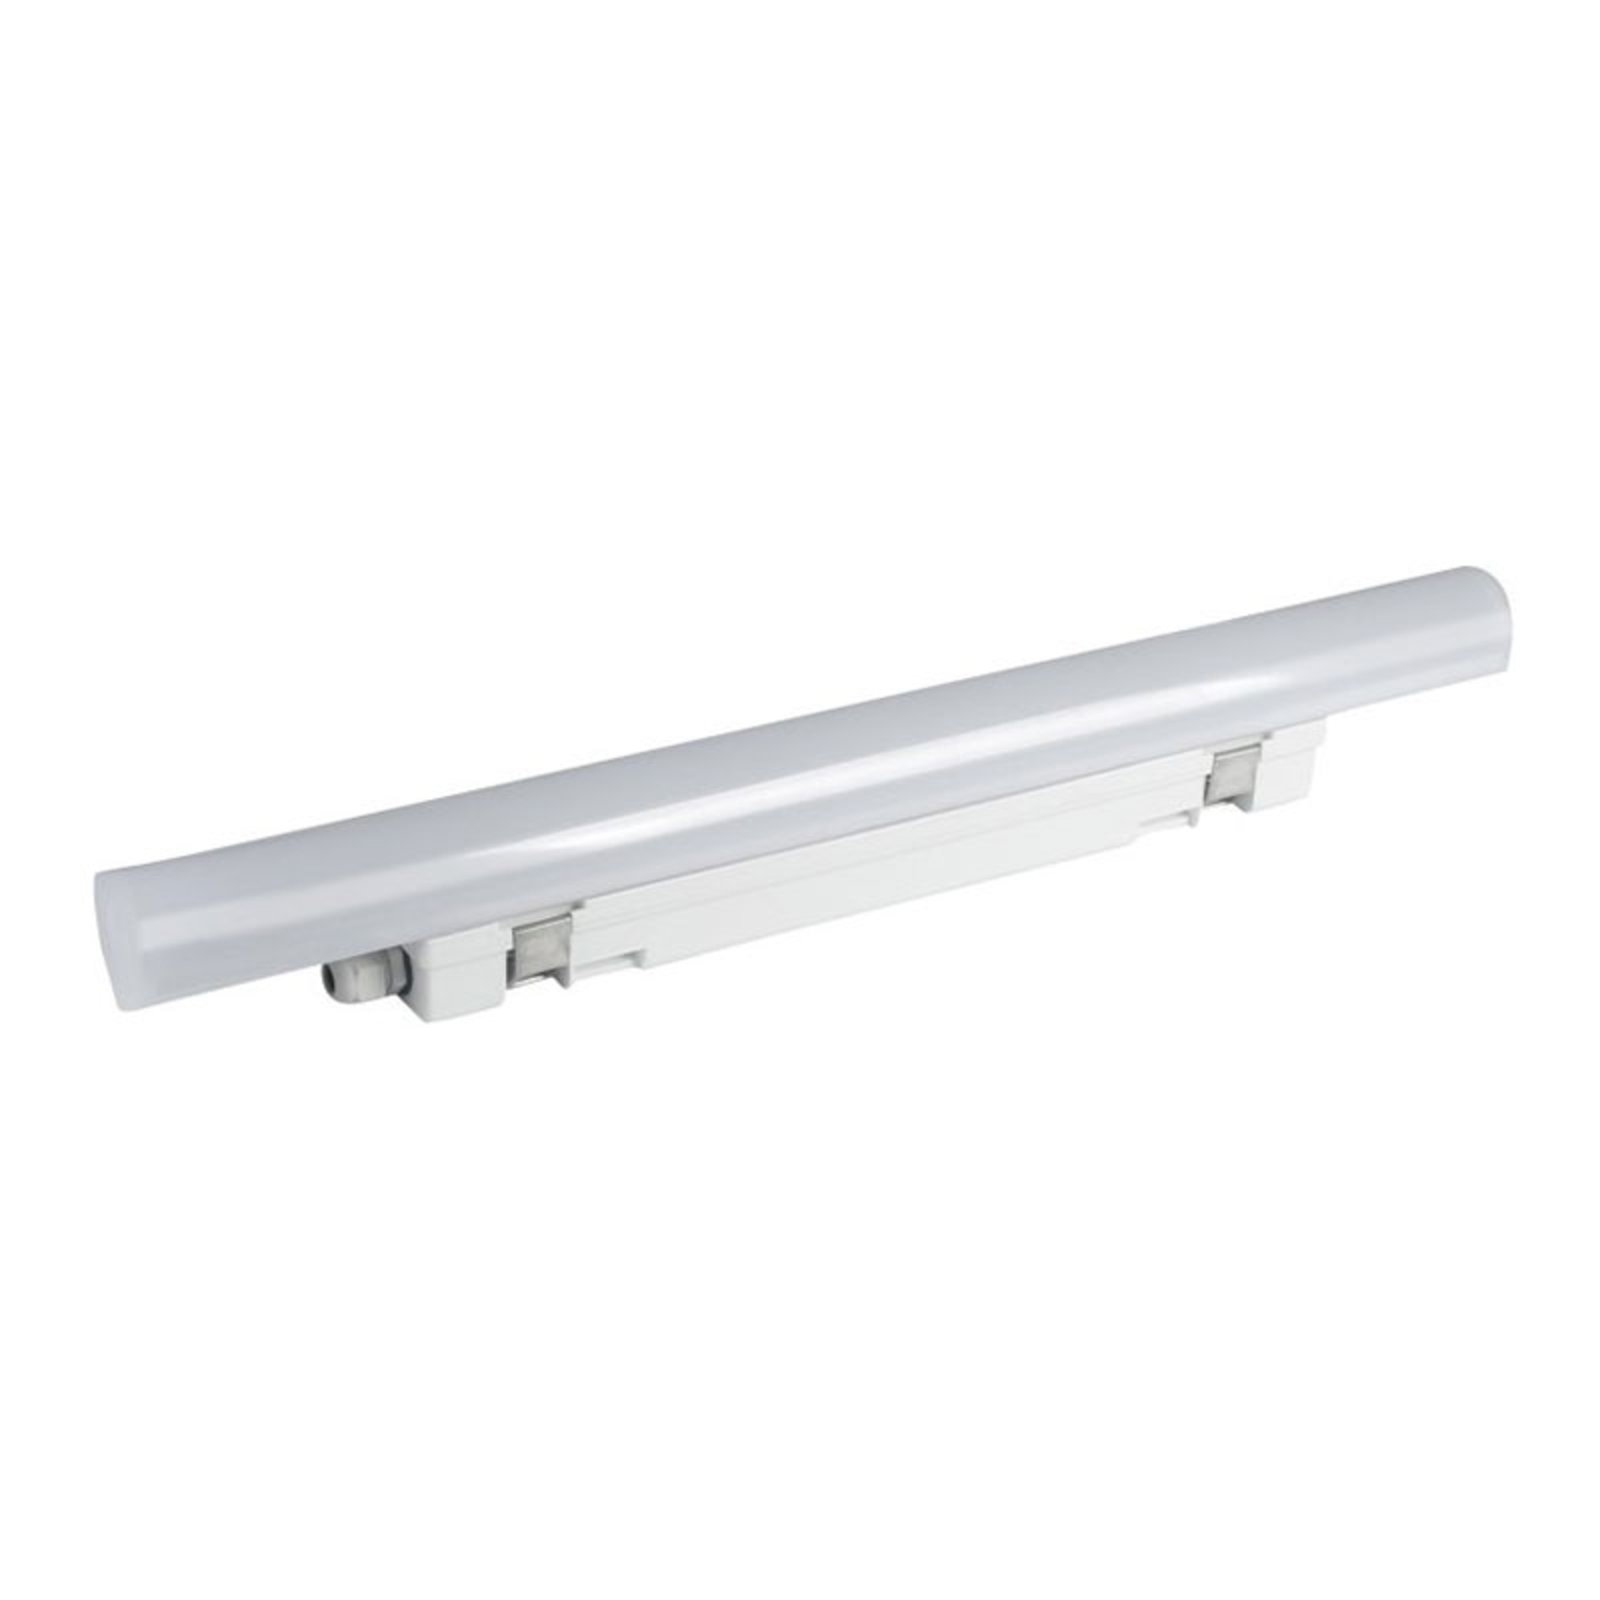 Aquafix LED wraparound light IP65, 60 cm long